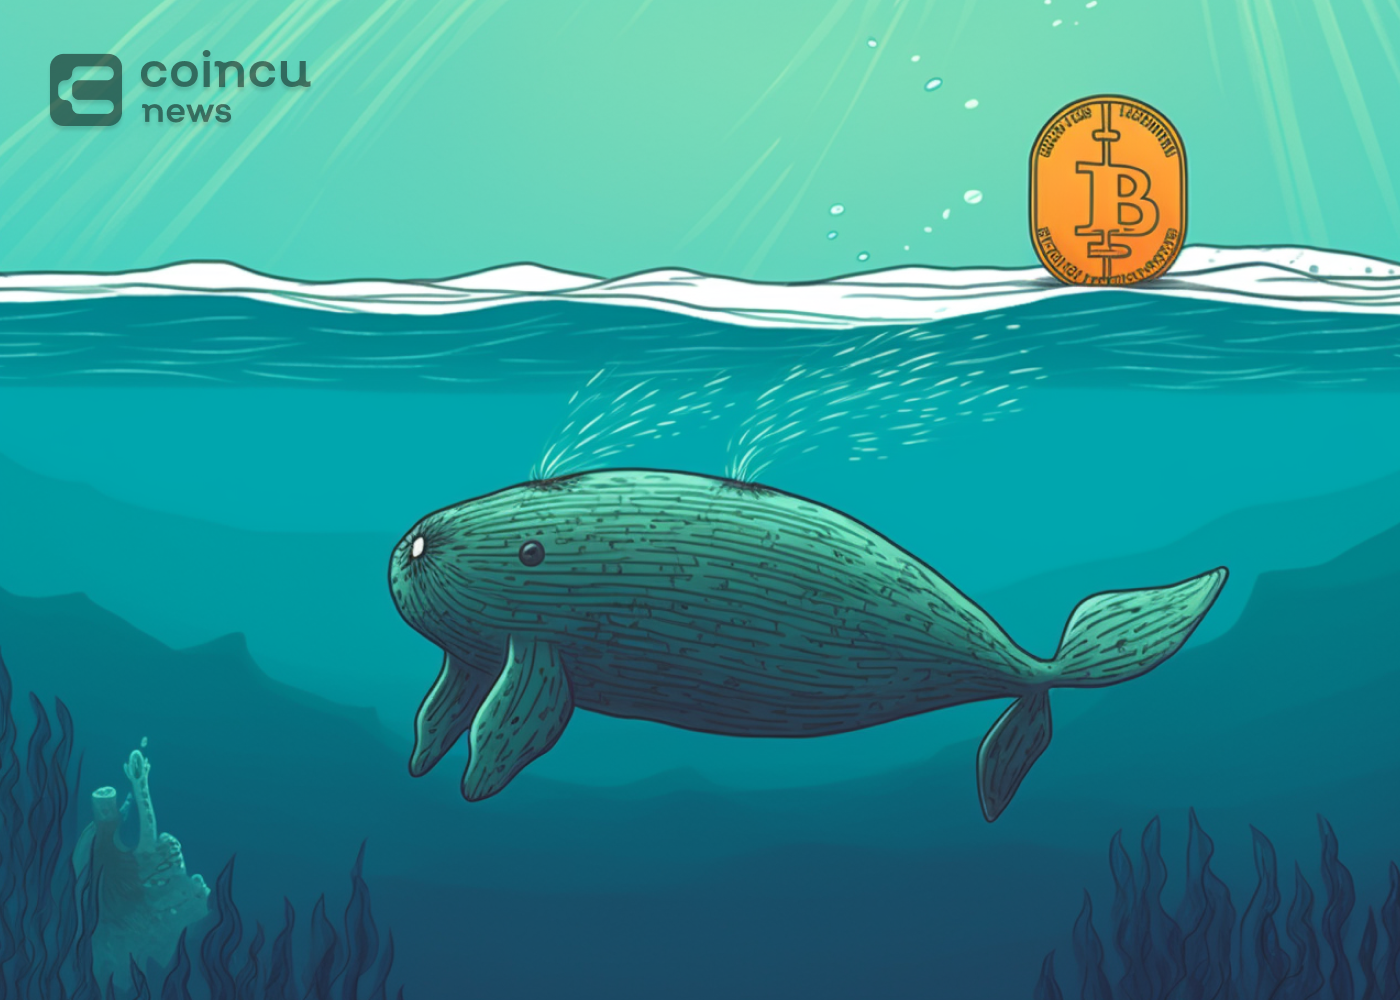 La ballena Bitcoin inactiva cobra vida después de 12.8 años y su valor se dispara más de 22,500 veces